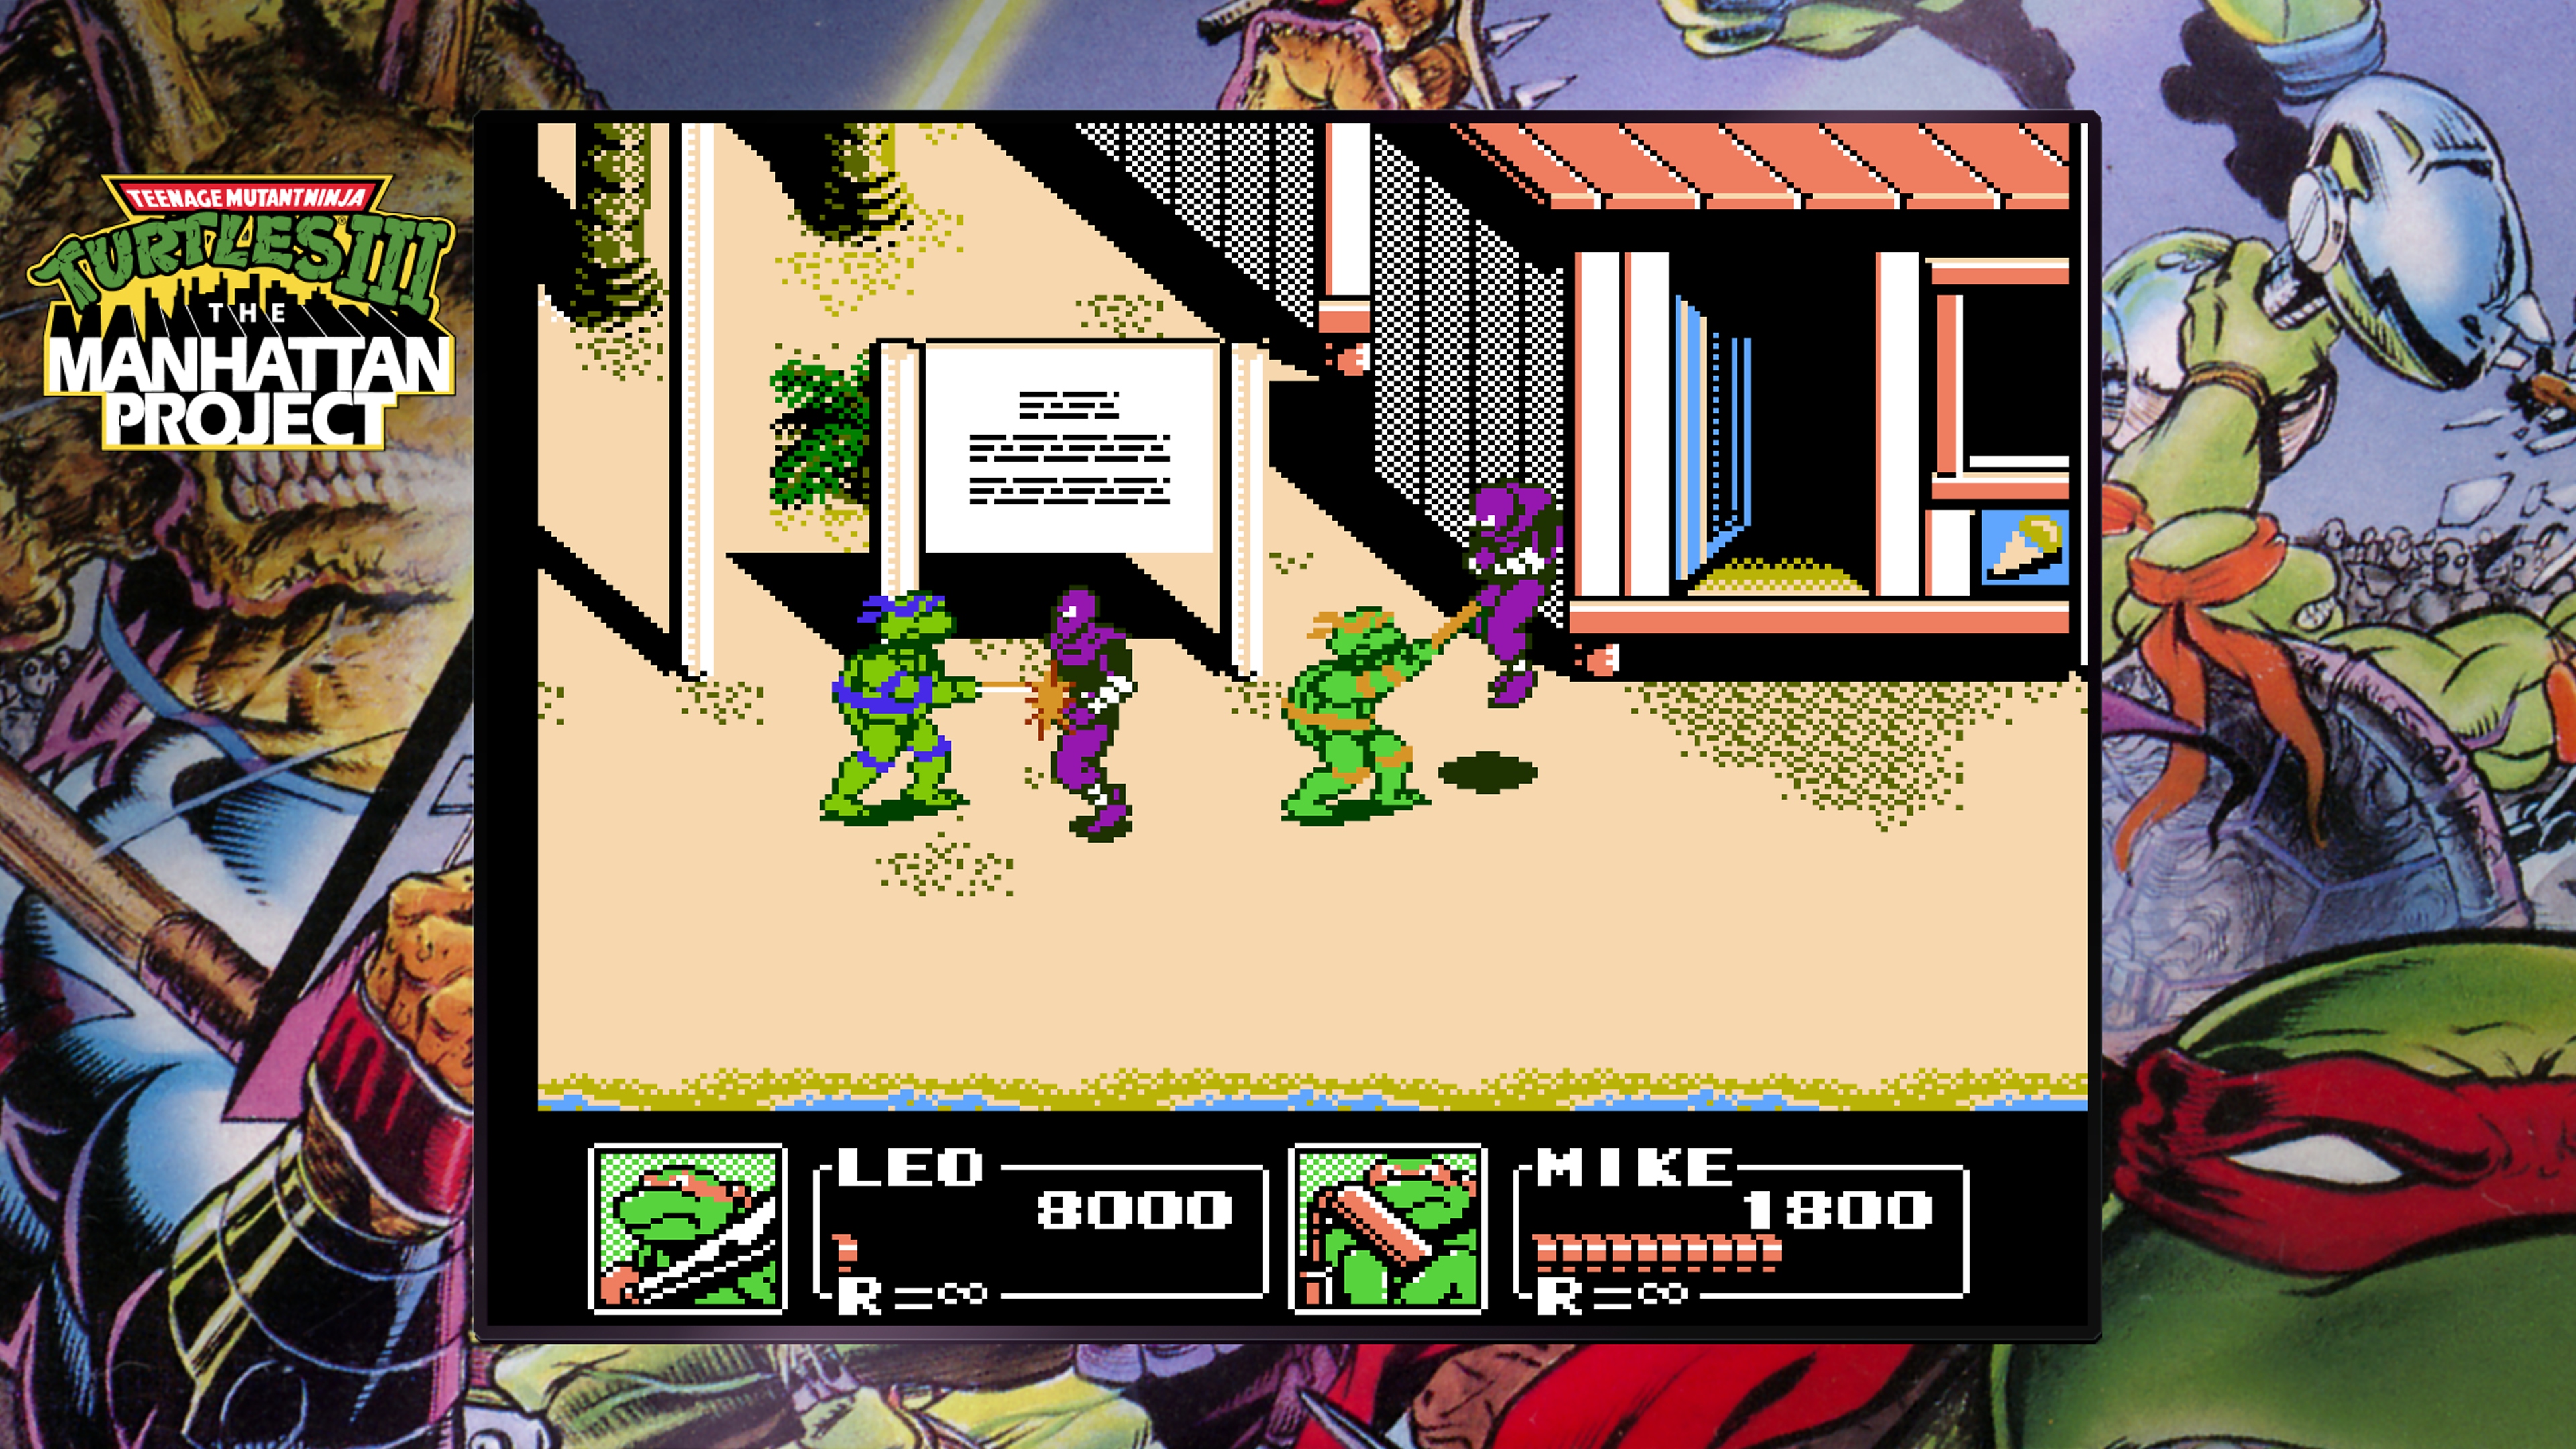 Kolekce Teenage Mutant Ninja Turtles – hra Projekt Manhattan, kde je zachycen Donatello a Michelangelo 